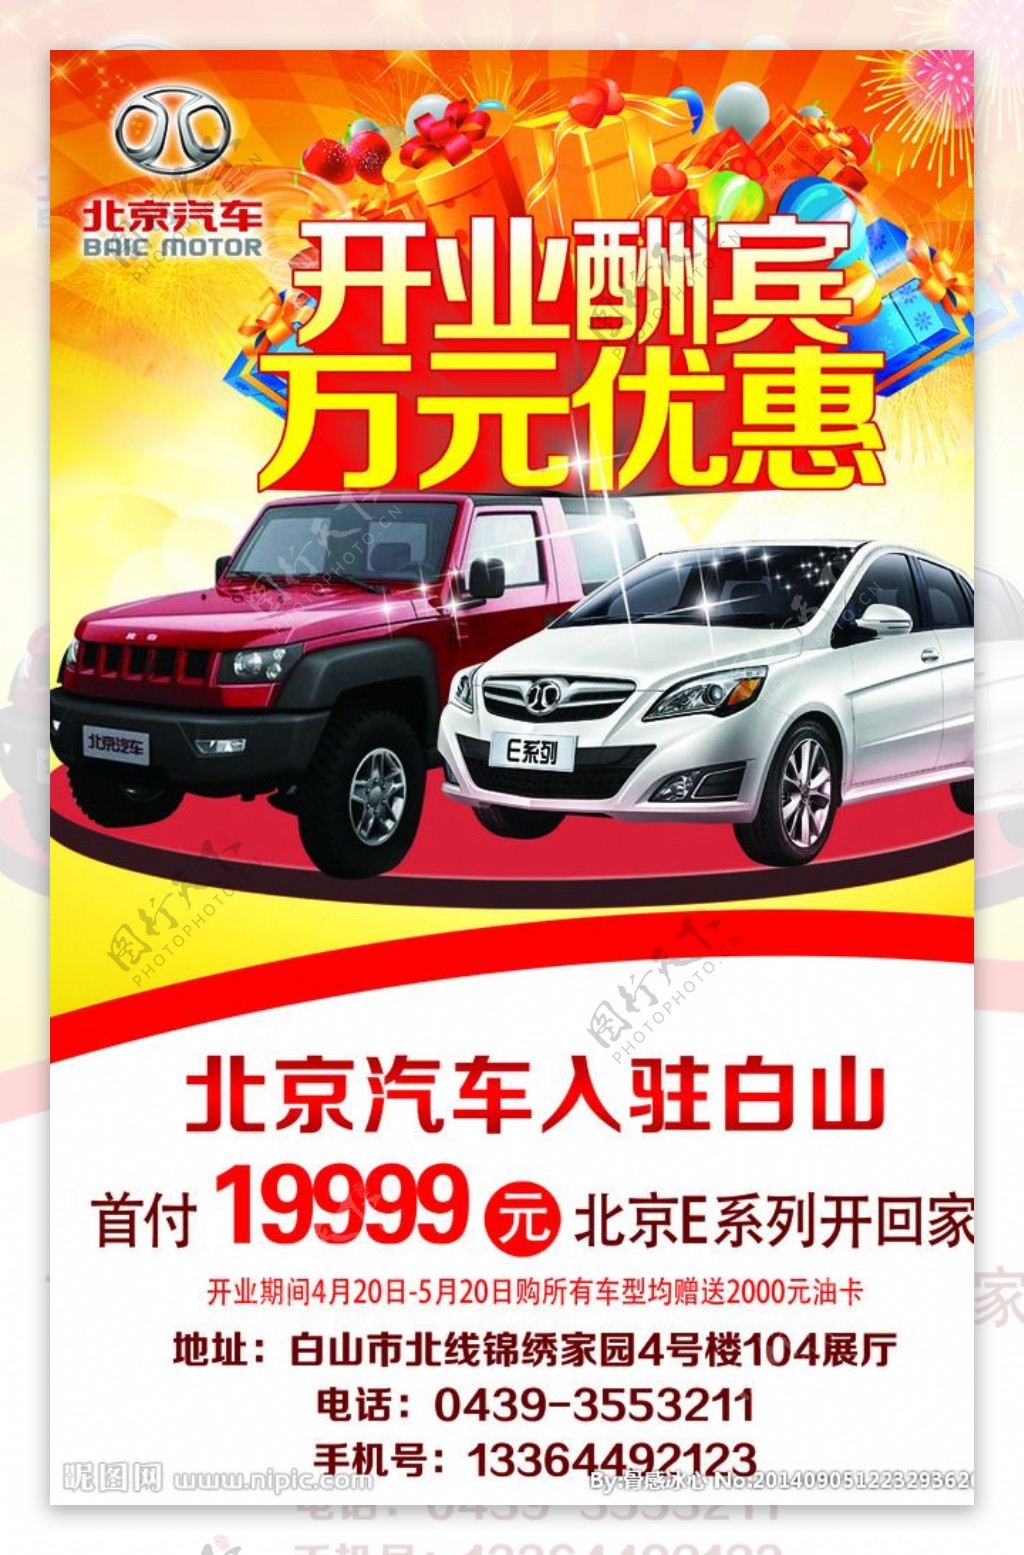 北京汽车开业酬宾宣传单图片